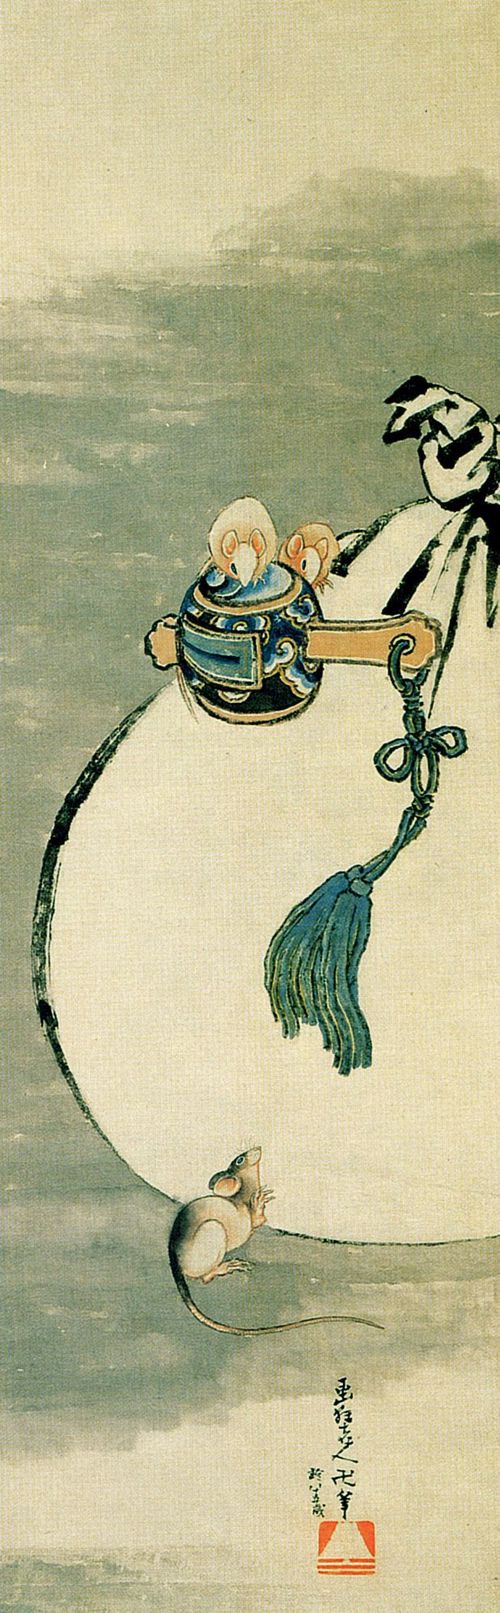 Katsushika Hokusai: Mäuse und ein kleiner Holzschlegel